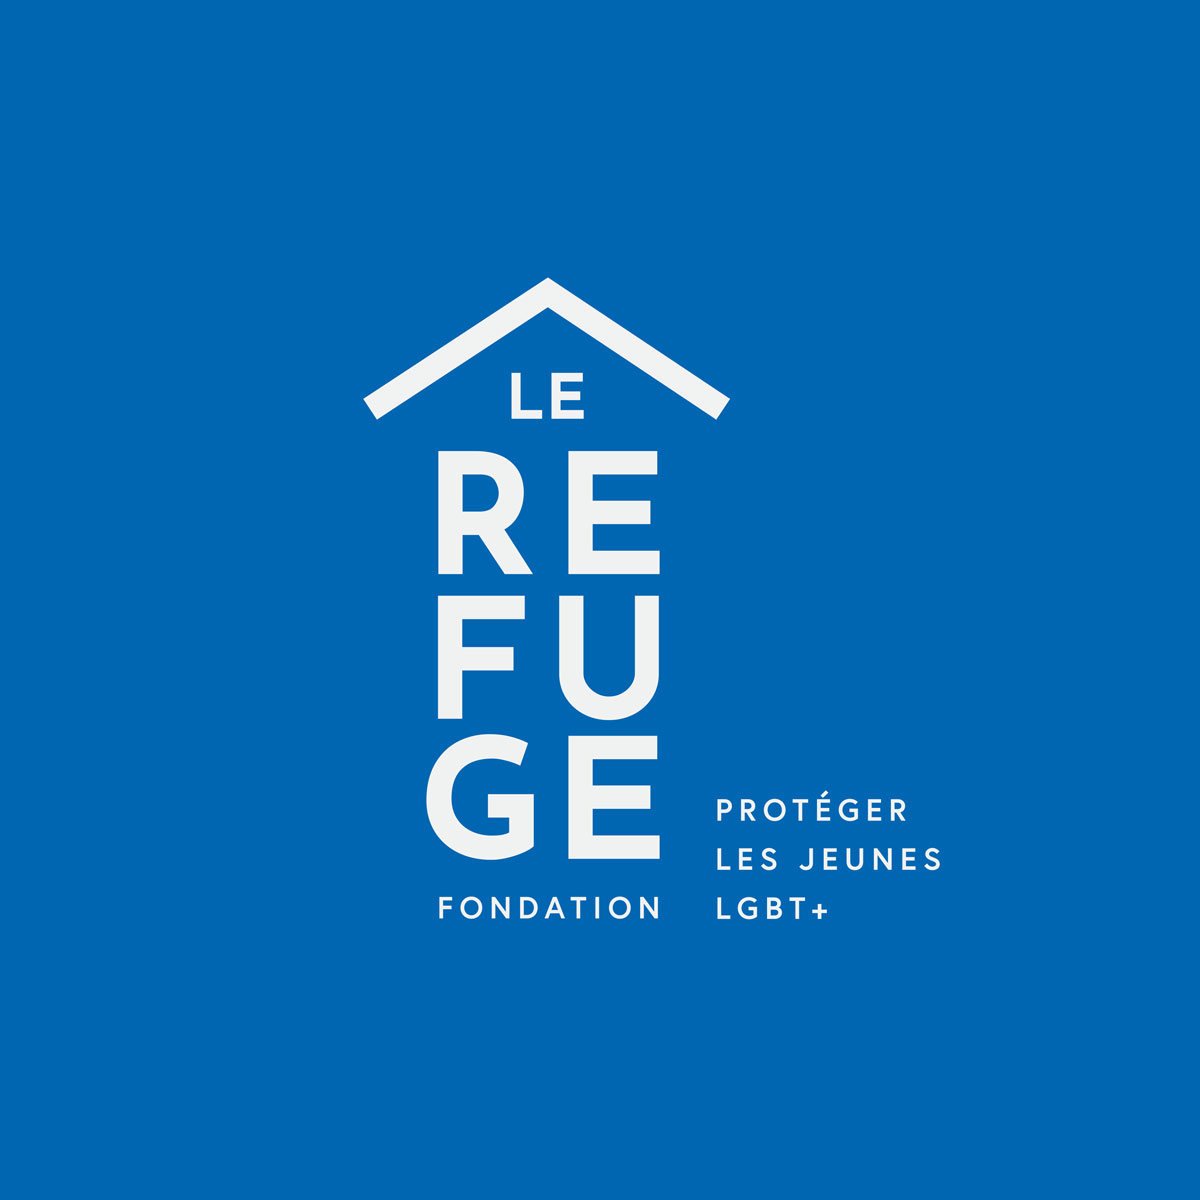  Fondation Le Refuge